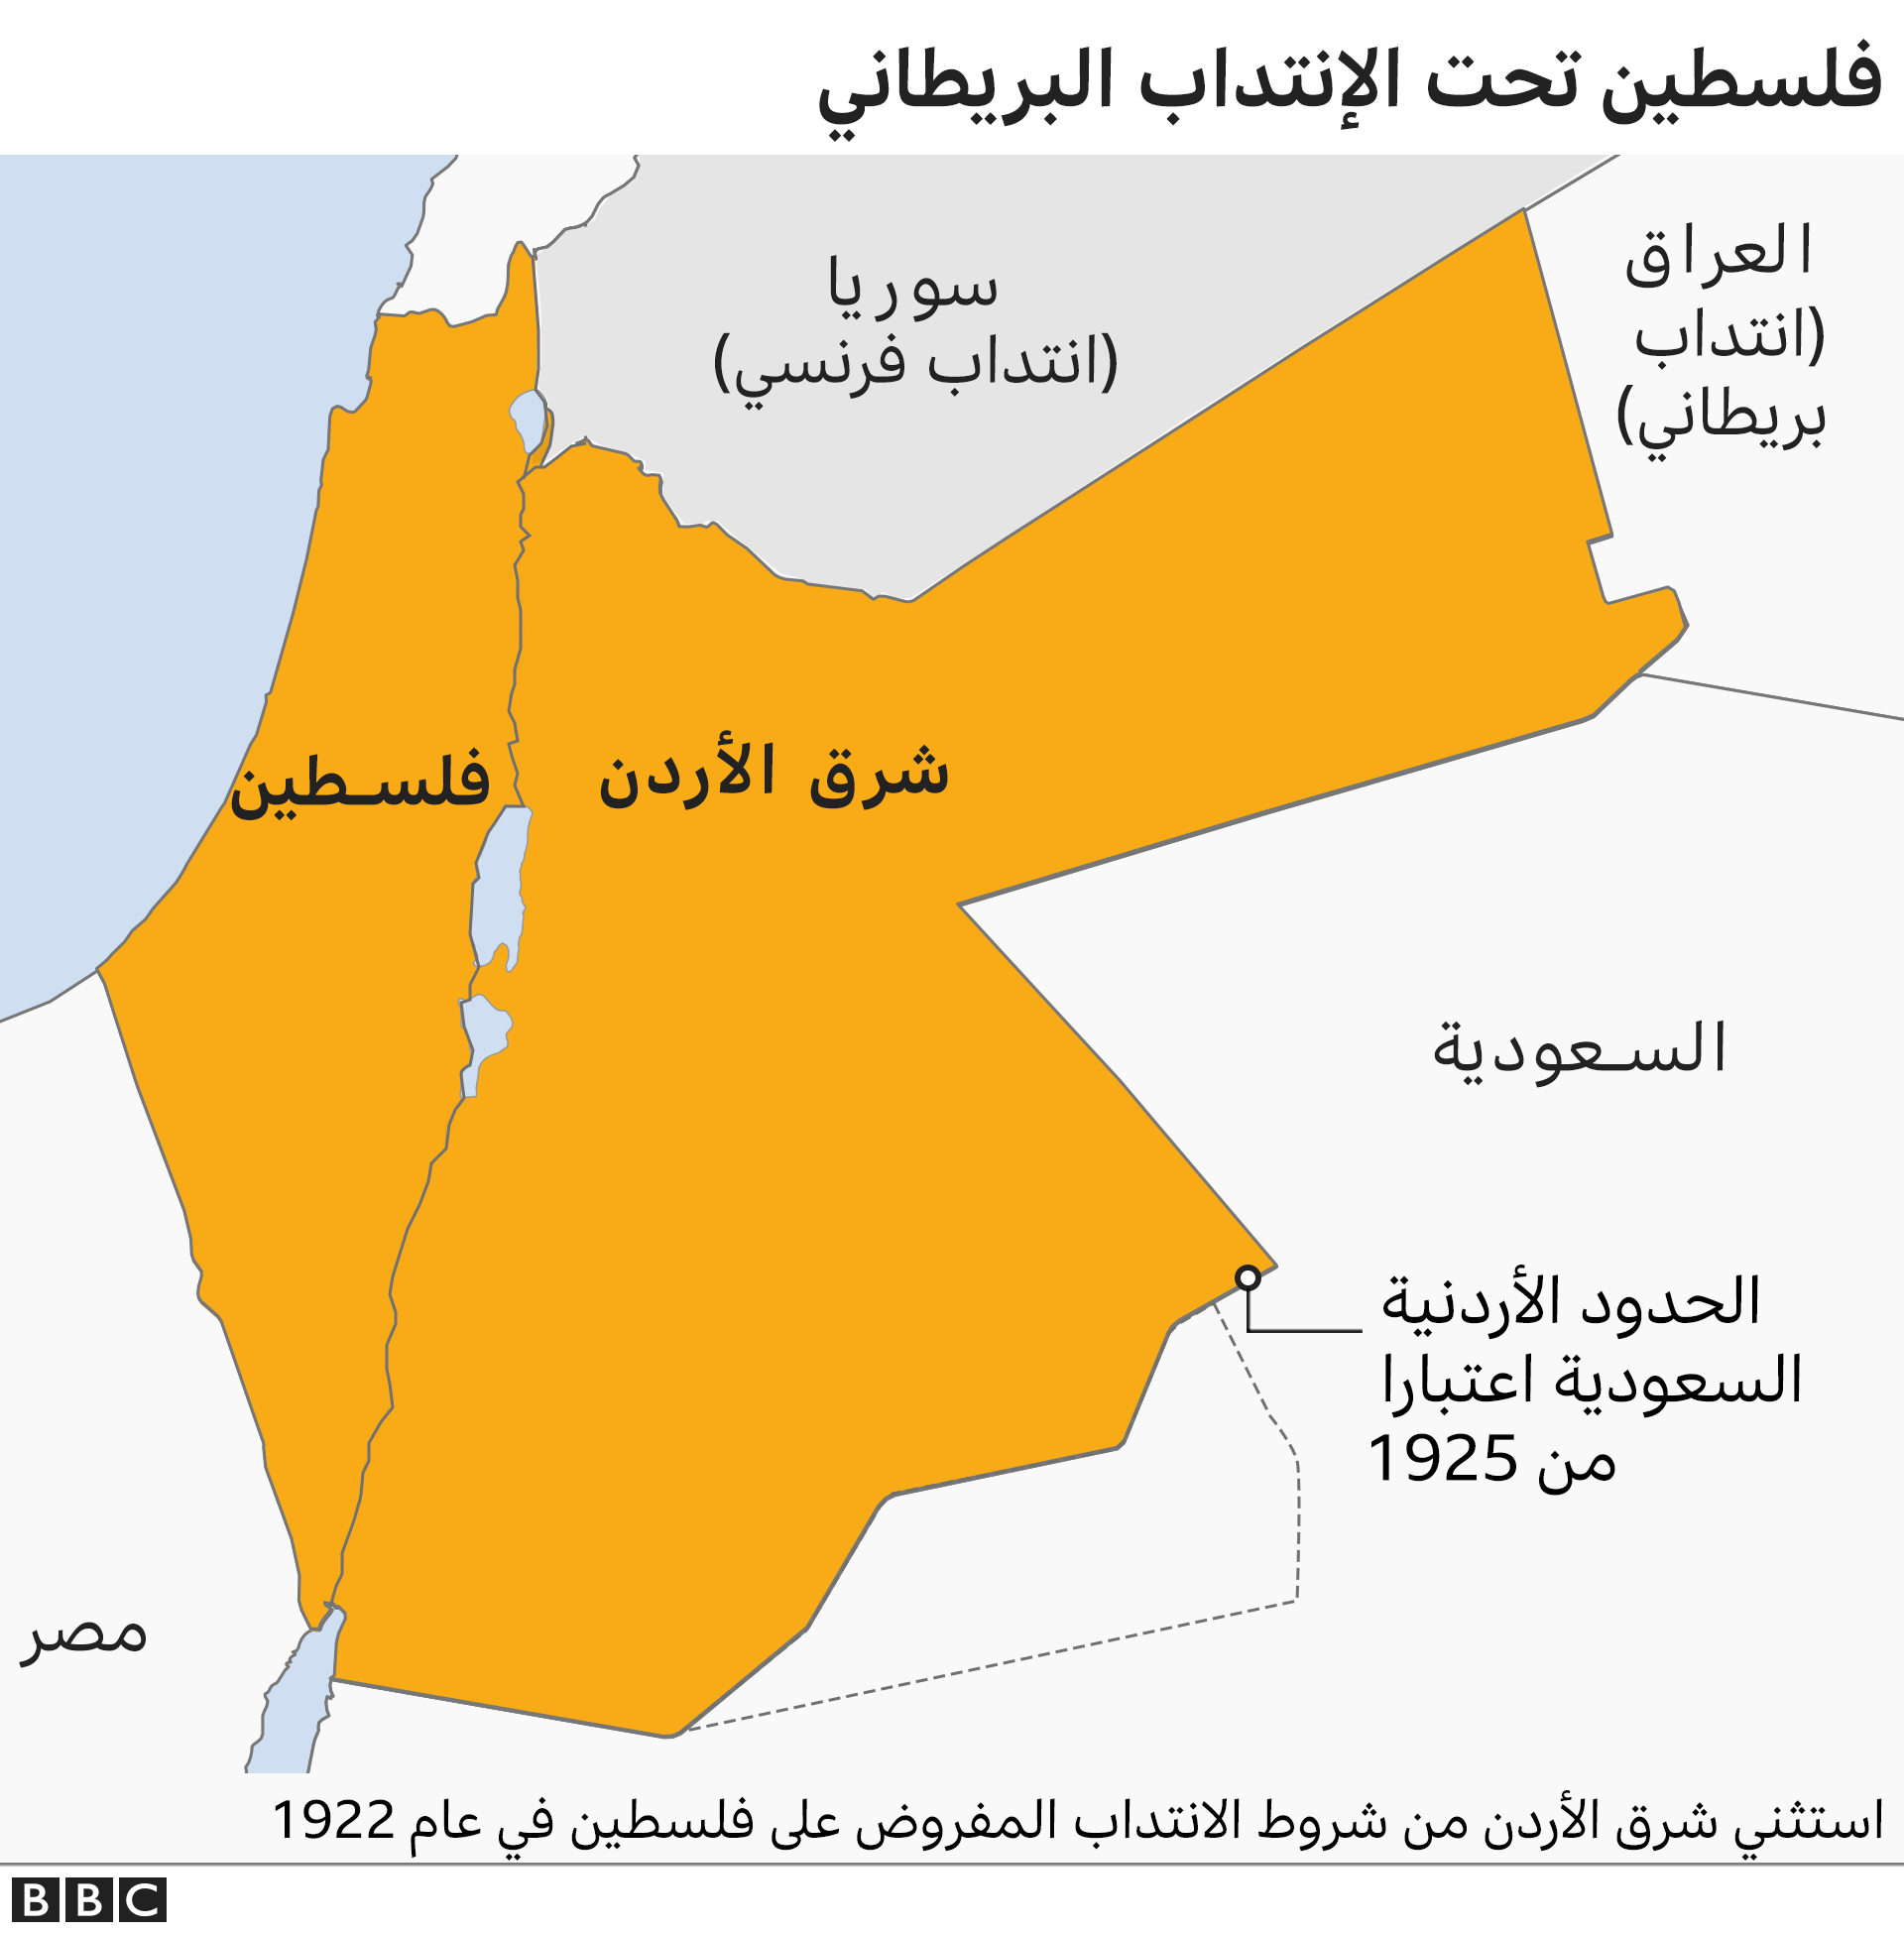 العراق مع توجد العربية السعودية حدود مشتركة للمملكة هل توجد